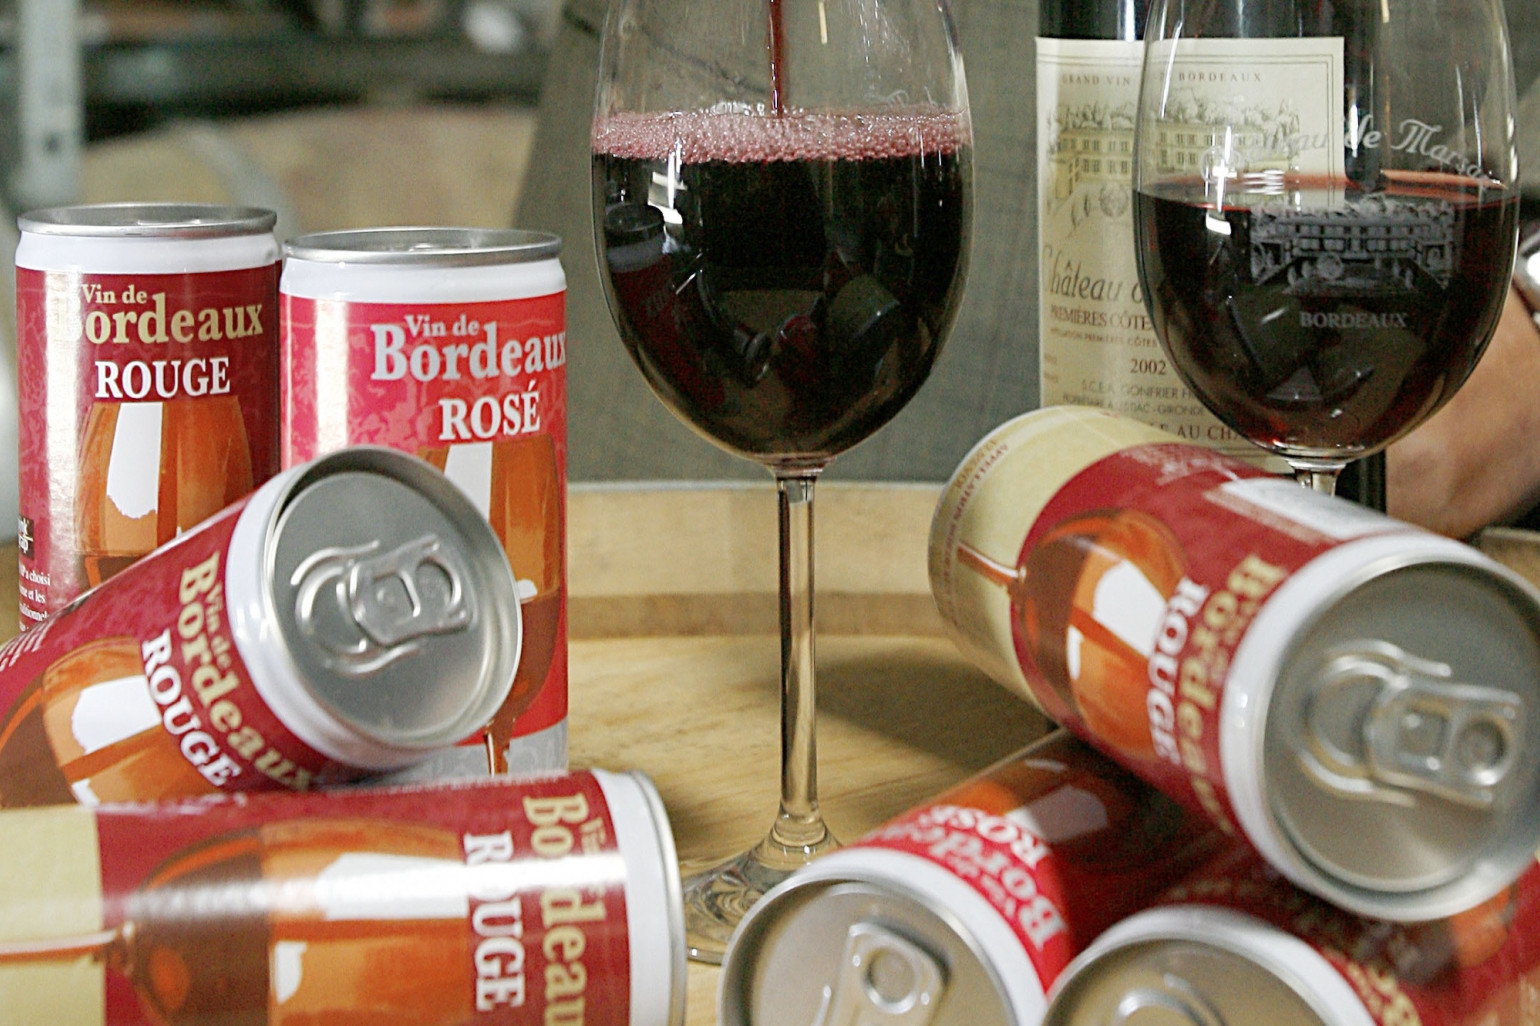 Polêmica do vinho em lata chega à França